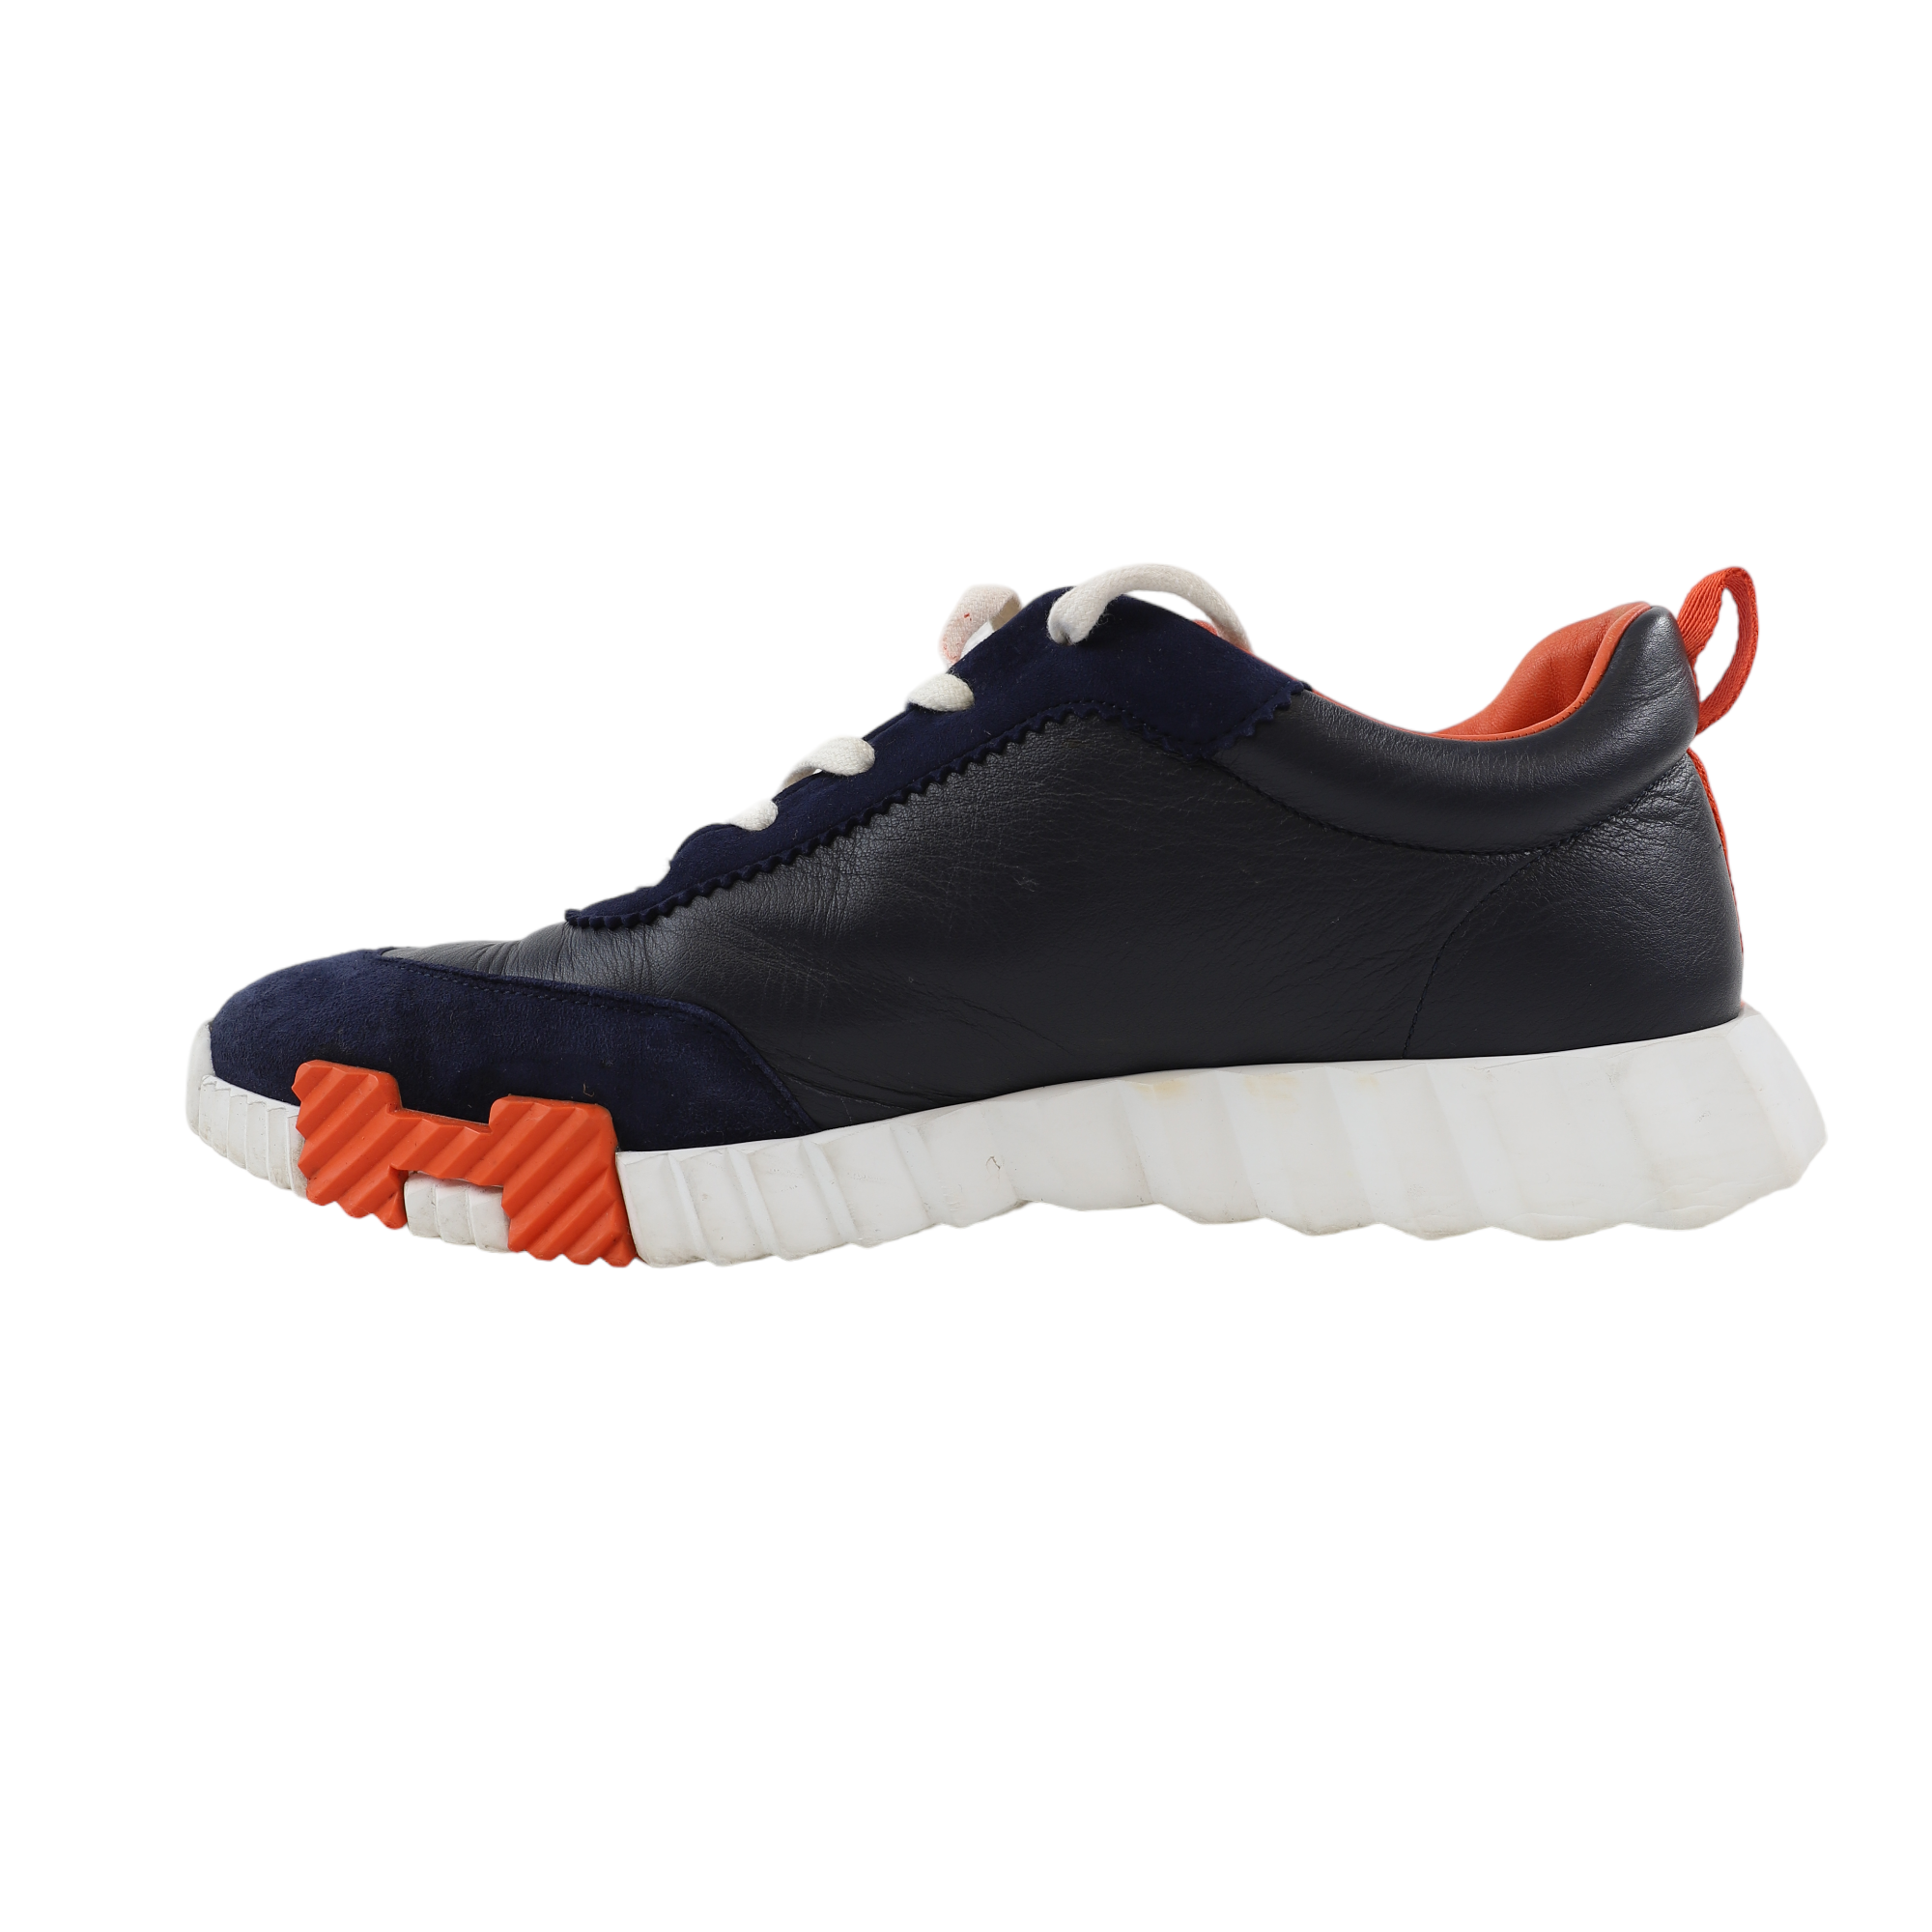 Louis Vuitton - Fastlane Reflective - Sneakers - Size: Shoes / EU